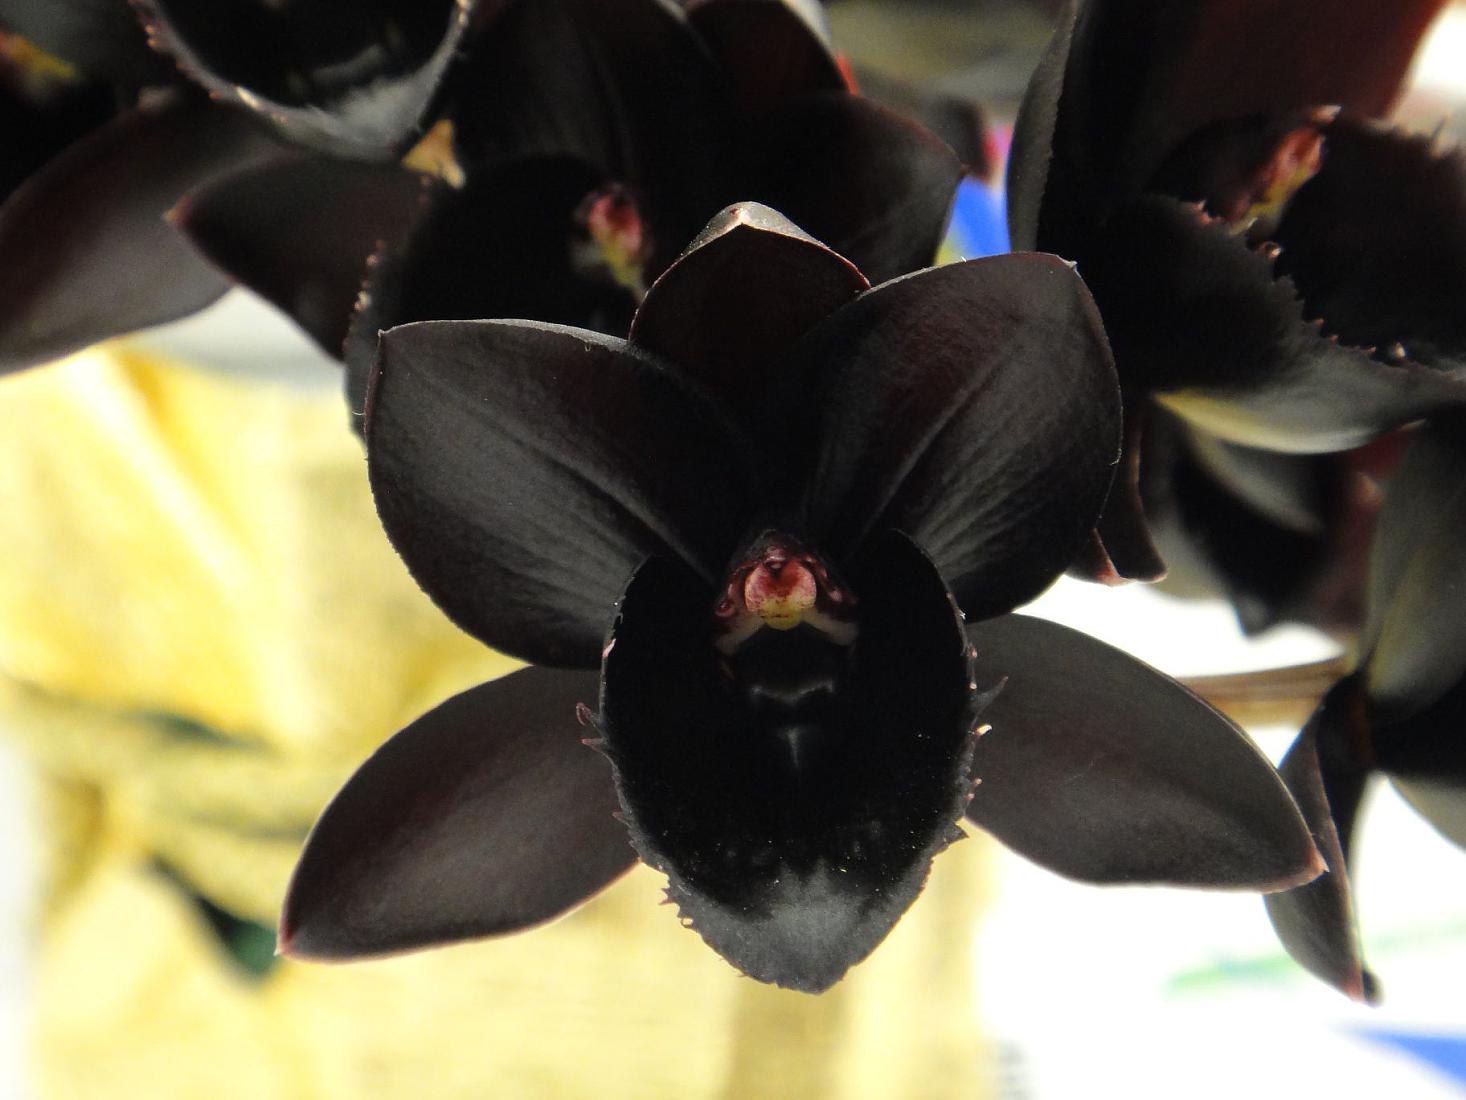 Phalaenopsis - crni cvijet orhideje, kako izgleda na fotografiji